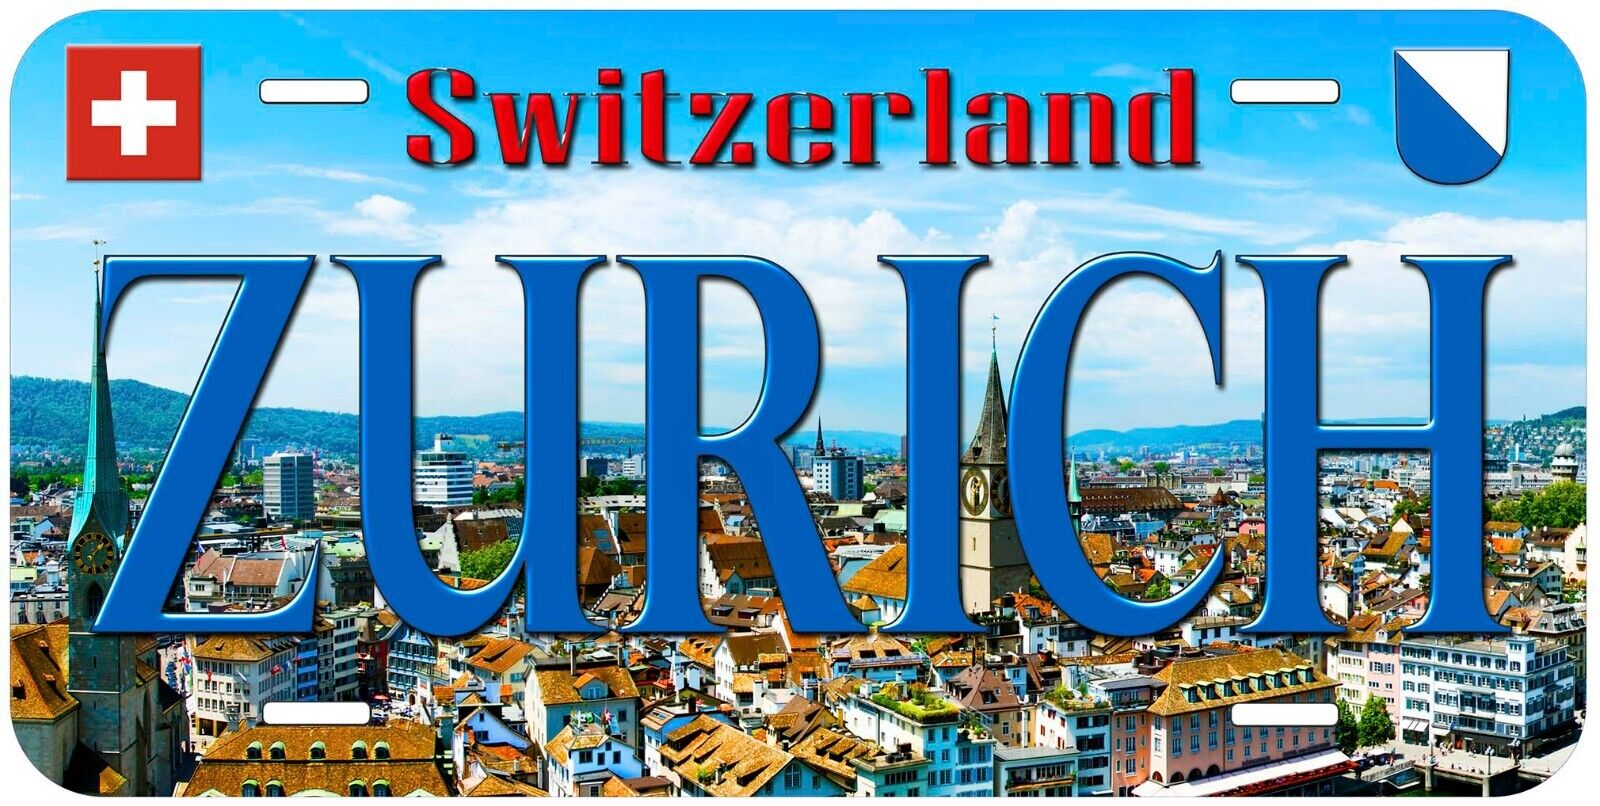 Zurich Switzerland Novelty Car Tag License Plate